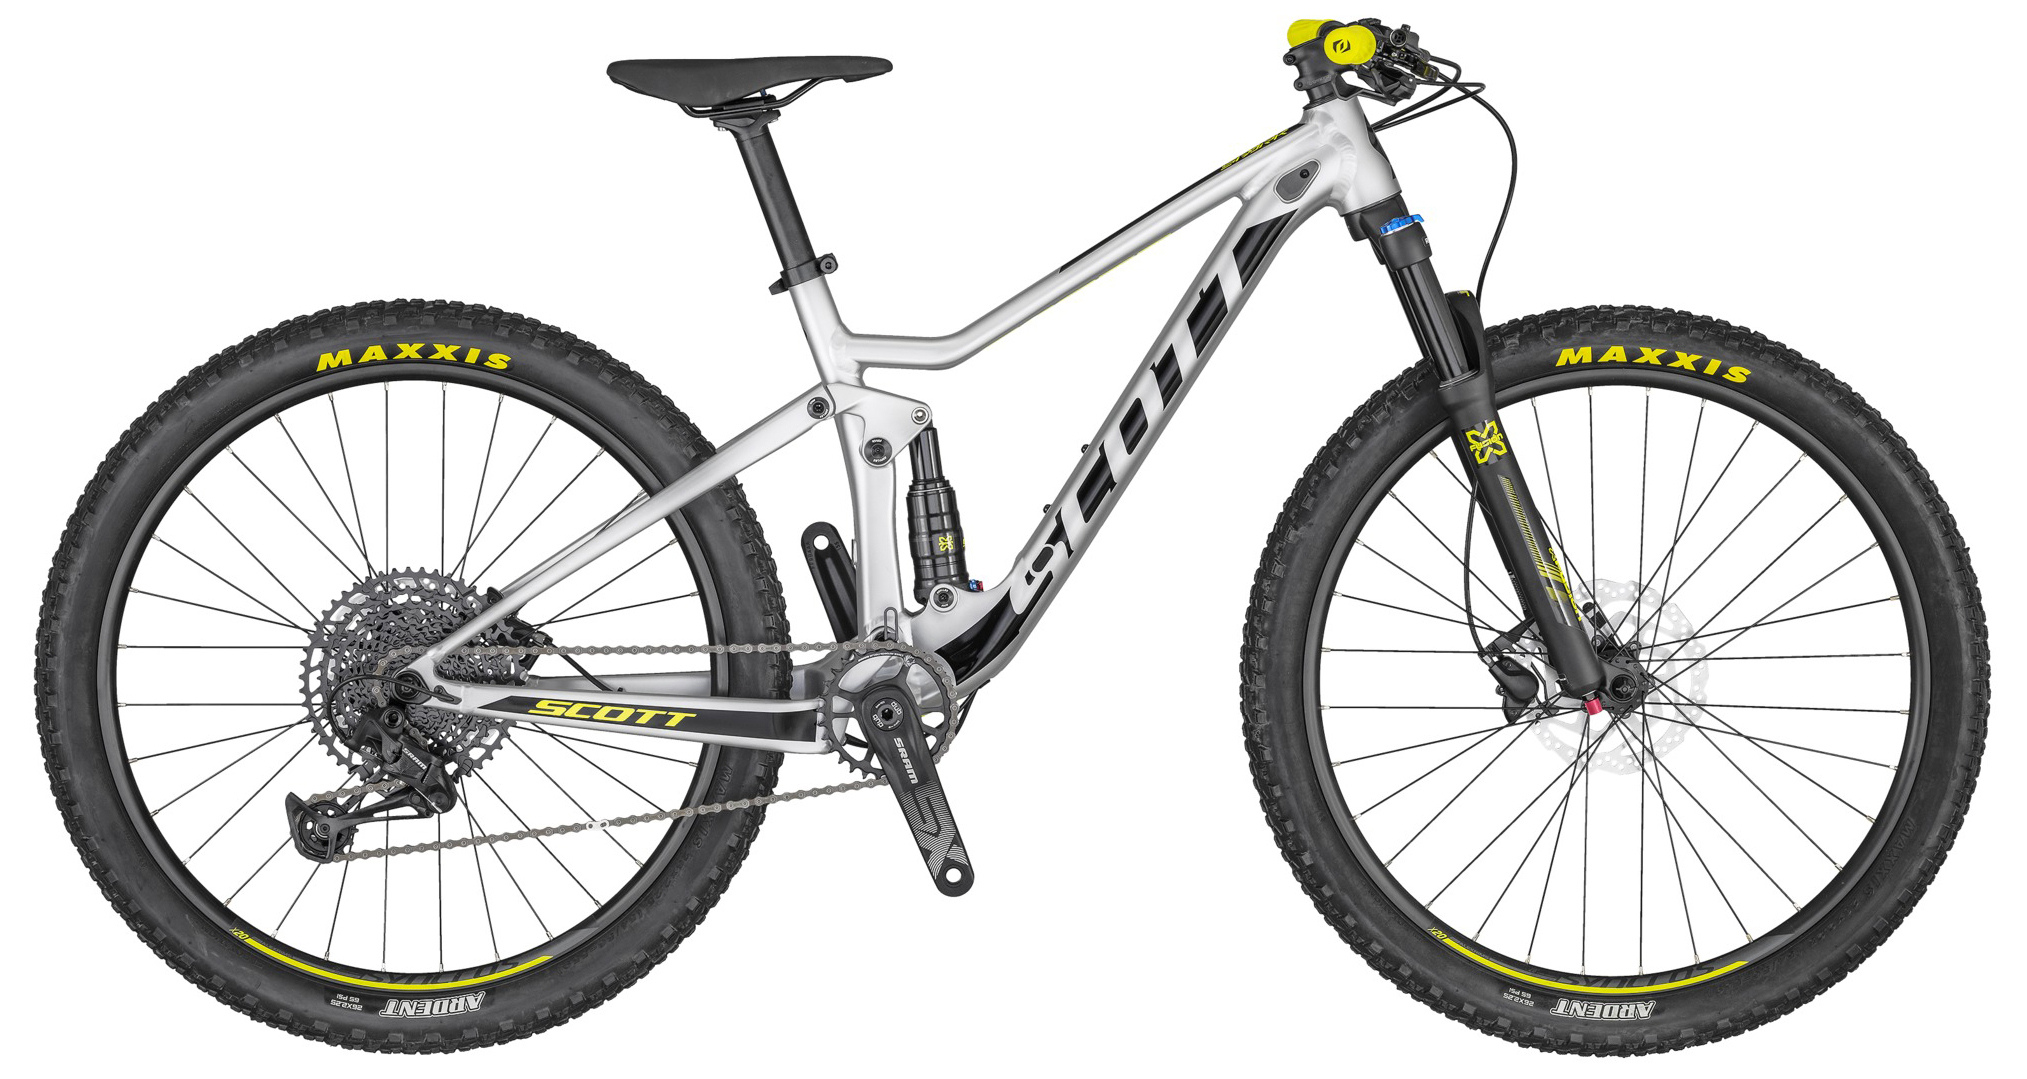  Отзывы о Двухподвесном велосипеде Scott Spark 600 2020